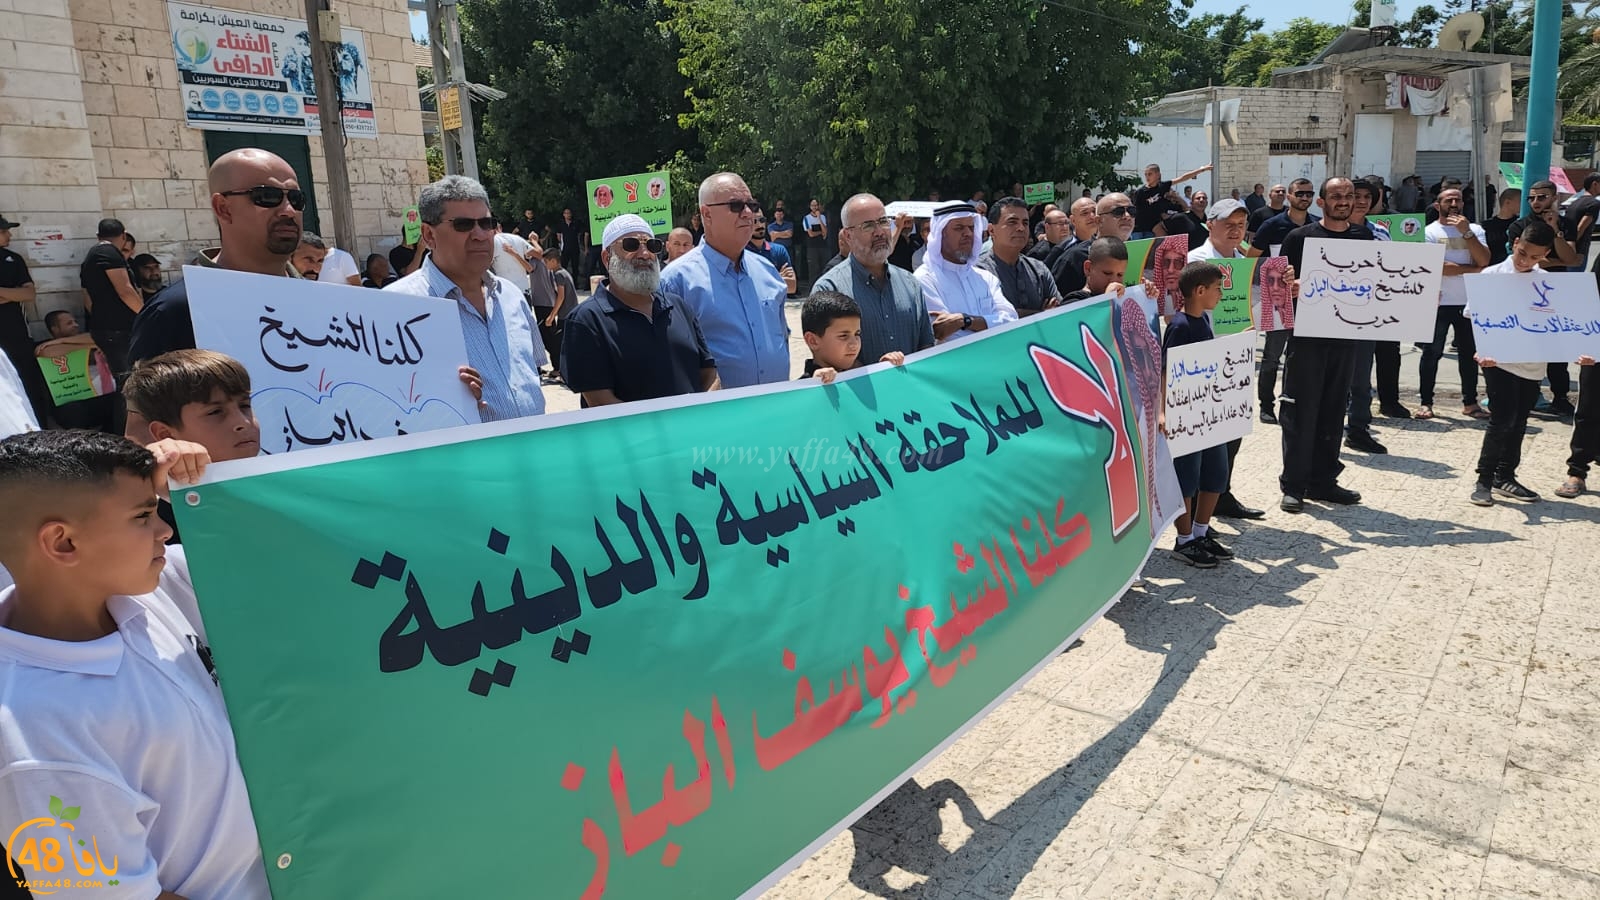  اللد: وقفة احتجاجية على استمرار اعتقال الشيخ يوسف الباز